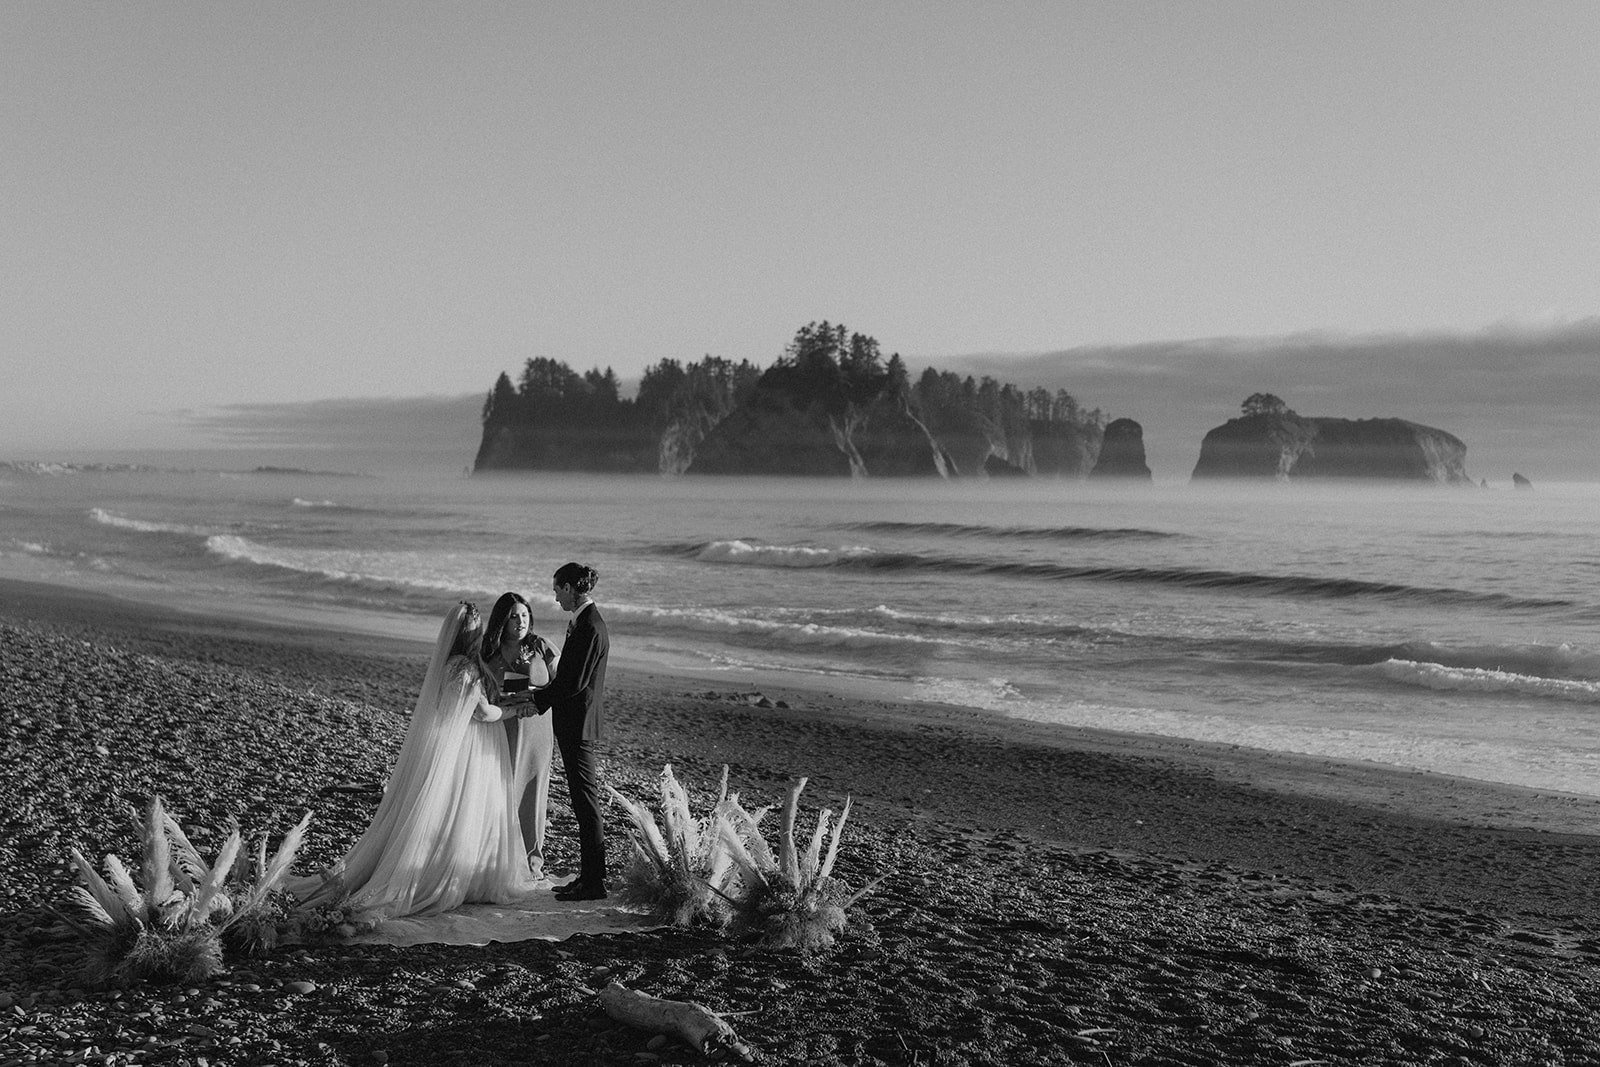 rialto-beach-elopement-henry-tieu-photography-117-min.jpg